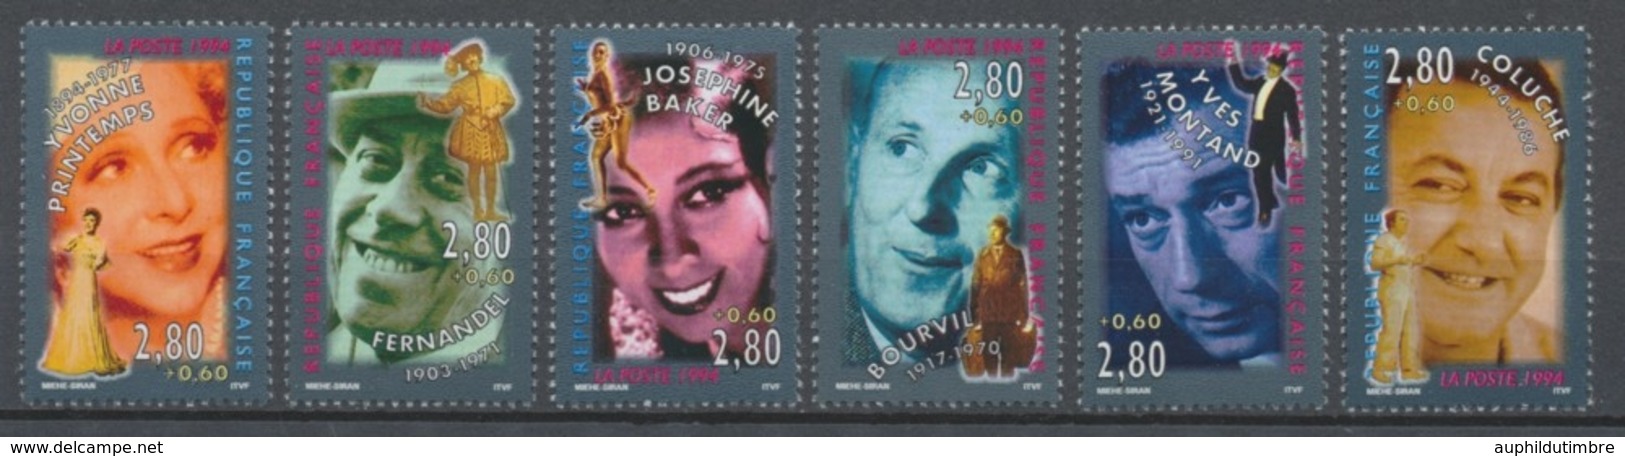 Série Personnages Célèbres. De La Scène à L'écran 6 Valeurs Y2902S - Unused Stamps